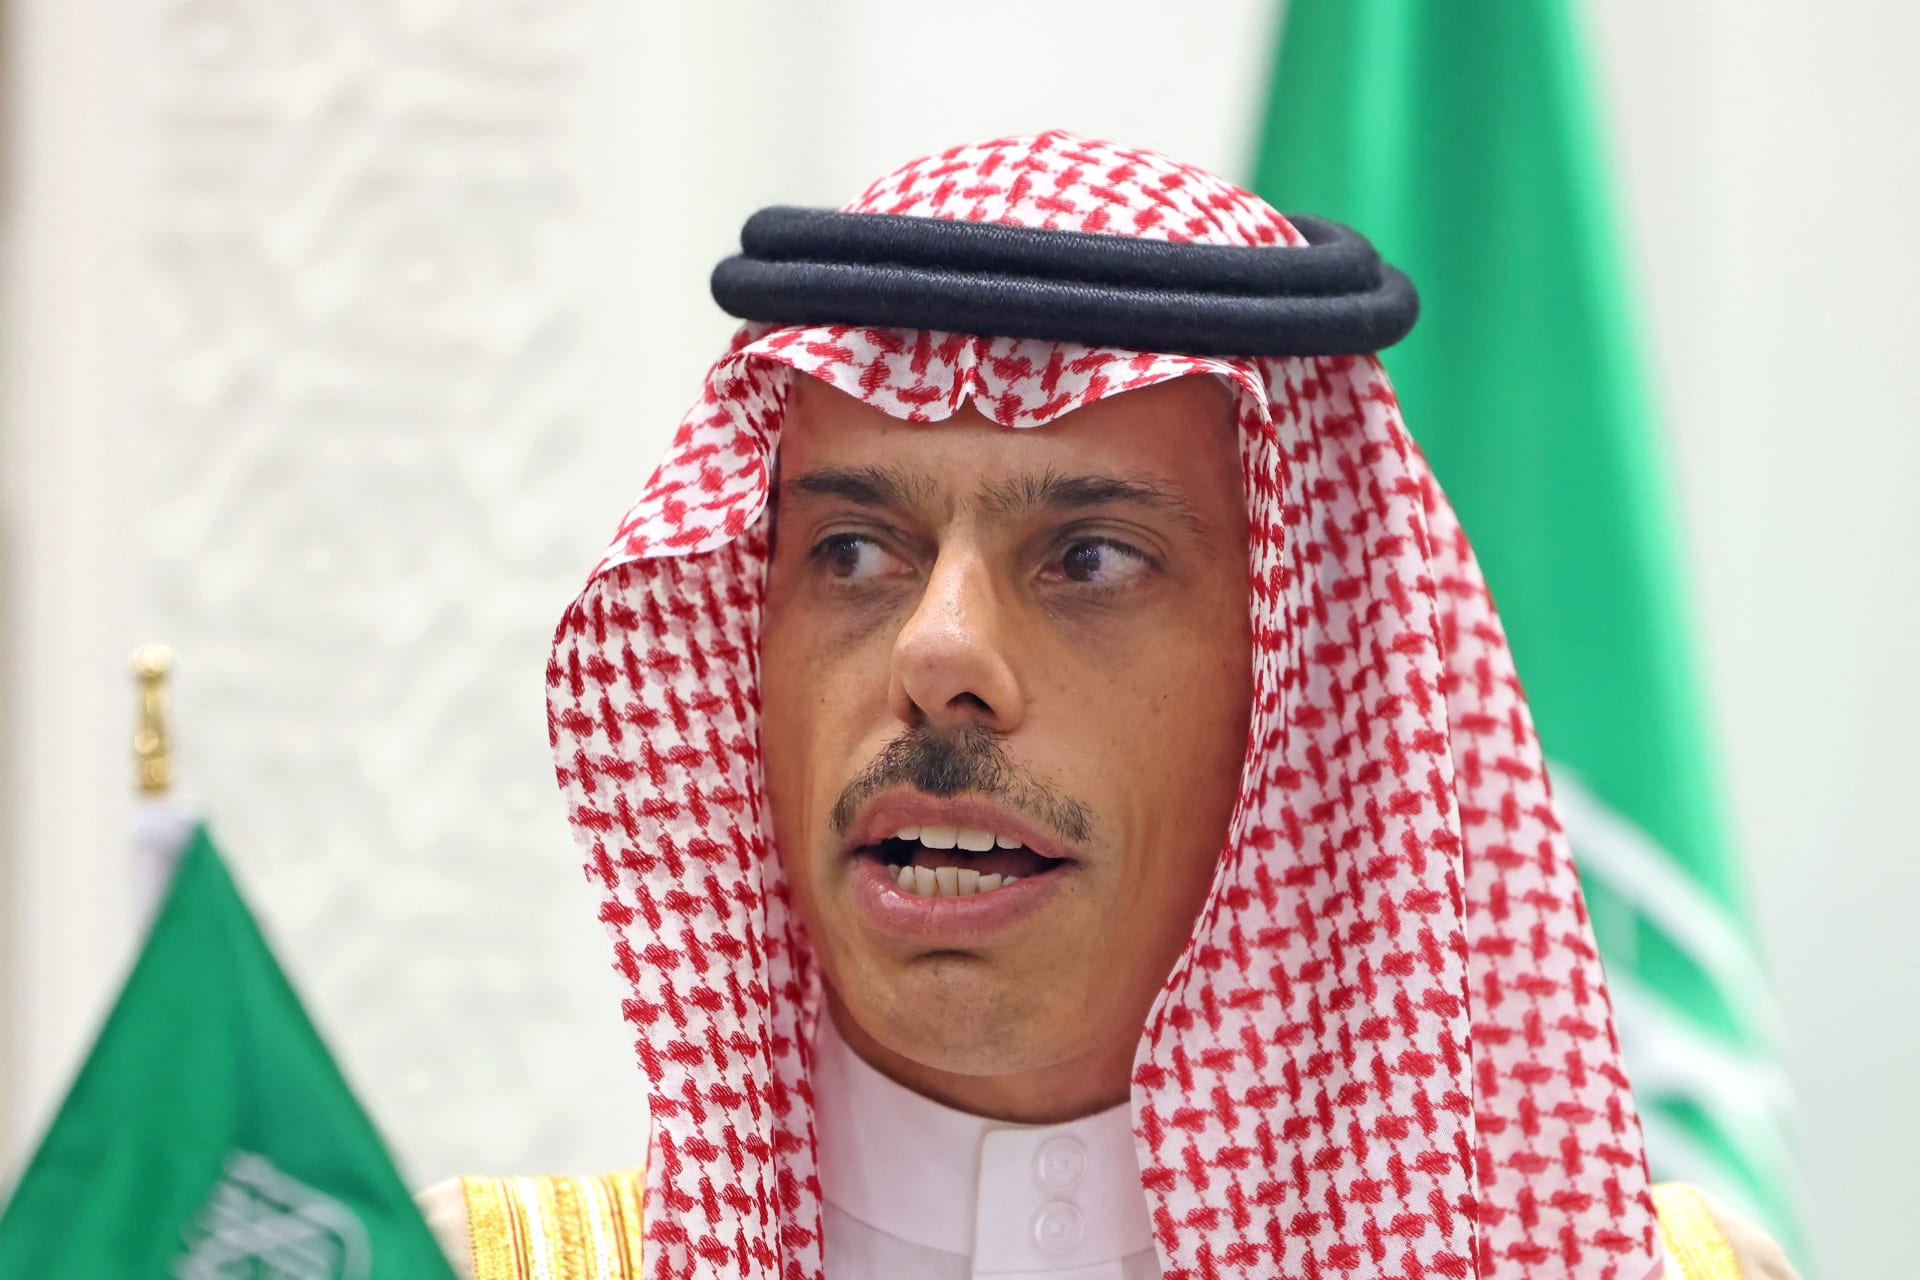 وزير خارجية السعودية يتحدث عن "القرار المناسب" بشأن الانضمام لـ"بريكس"